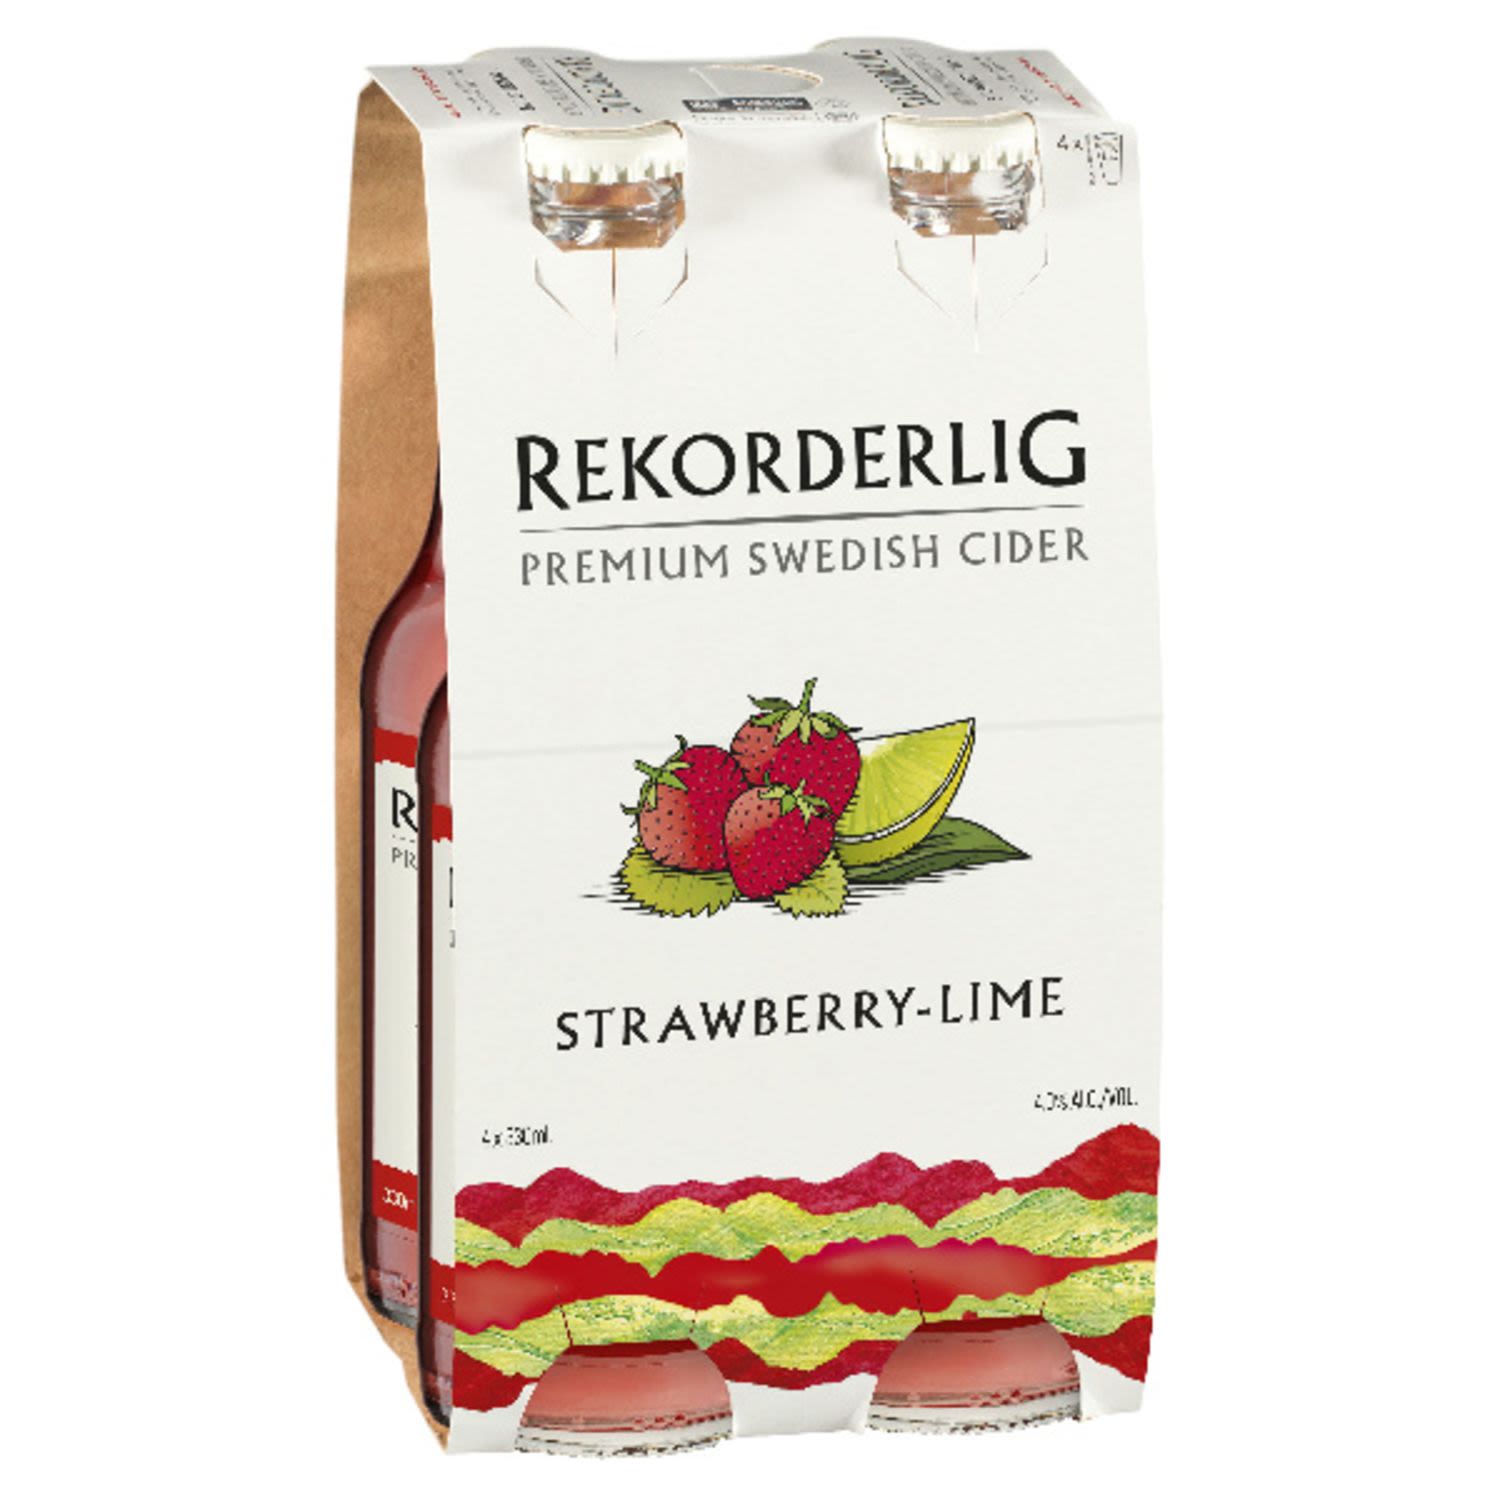 Rekorderlig Premium Strawberry & Lime Cider 330mL 4 Pack